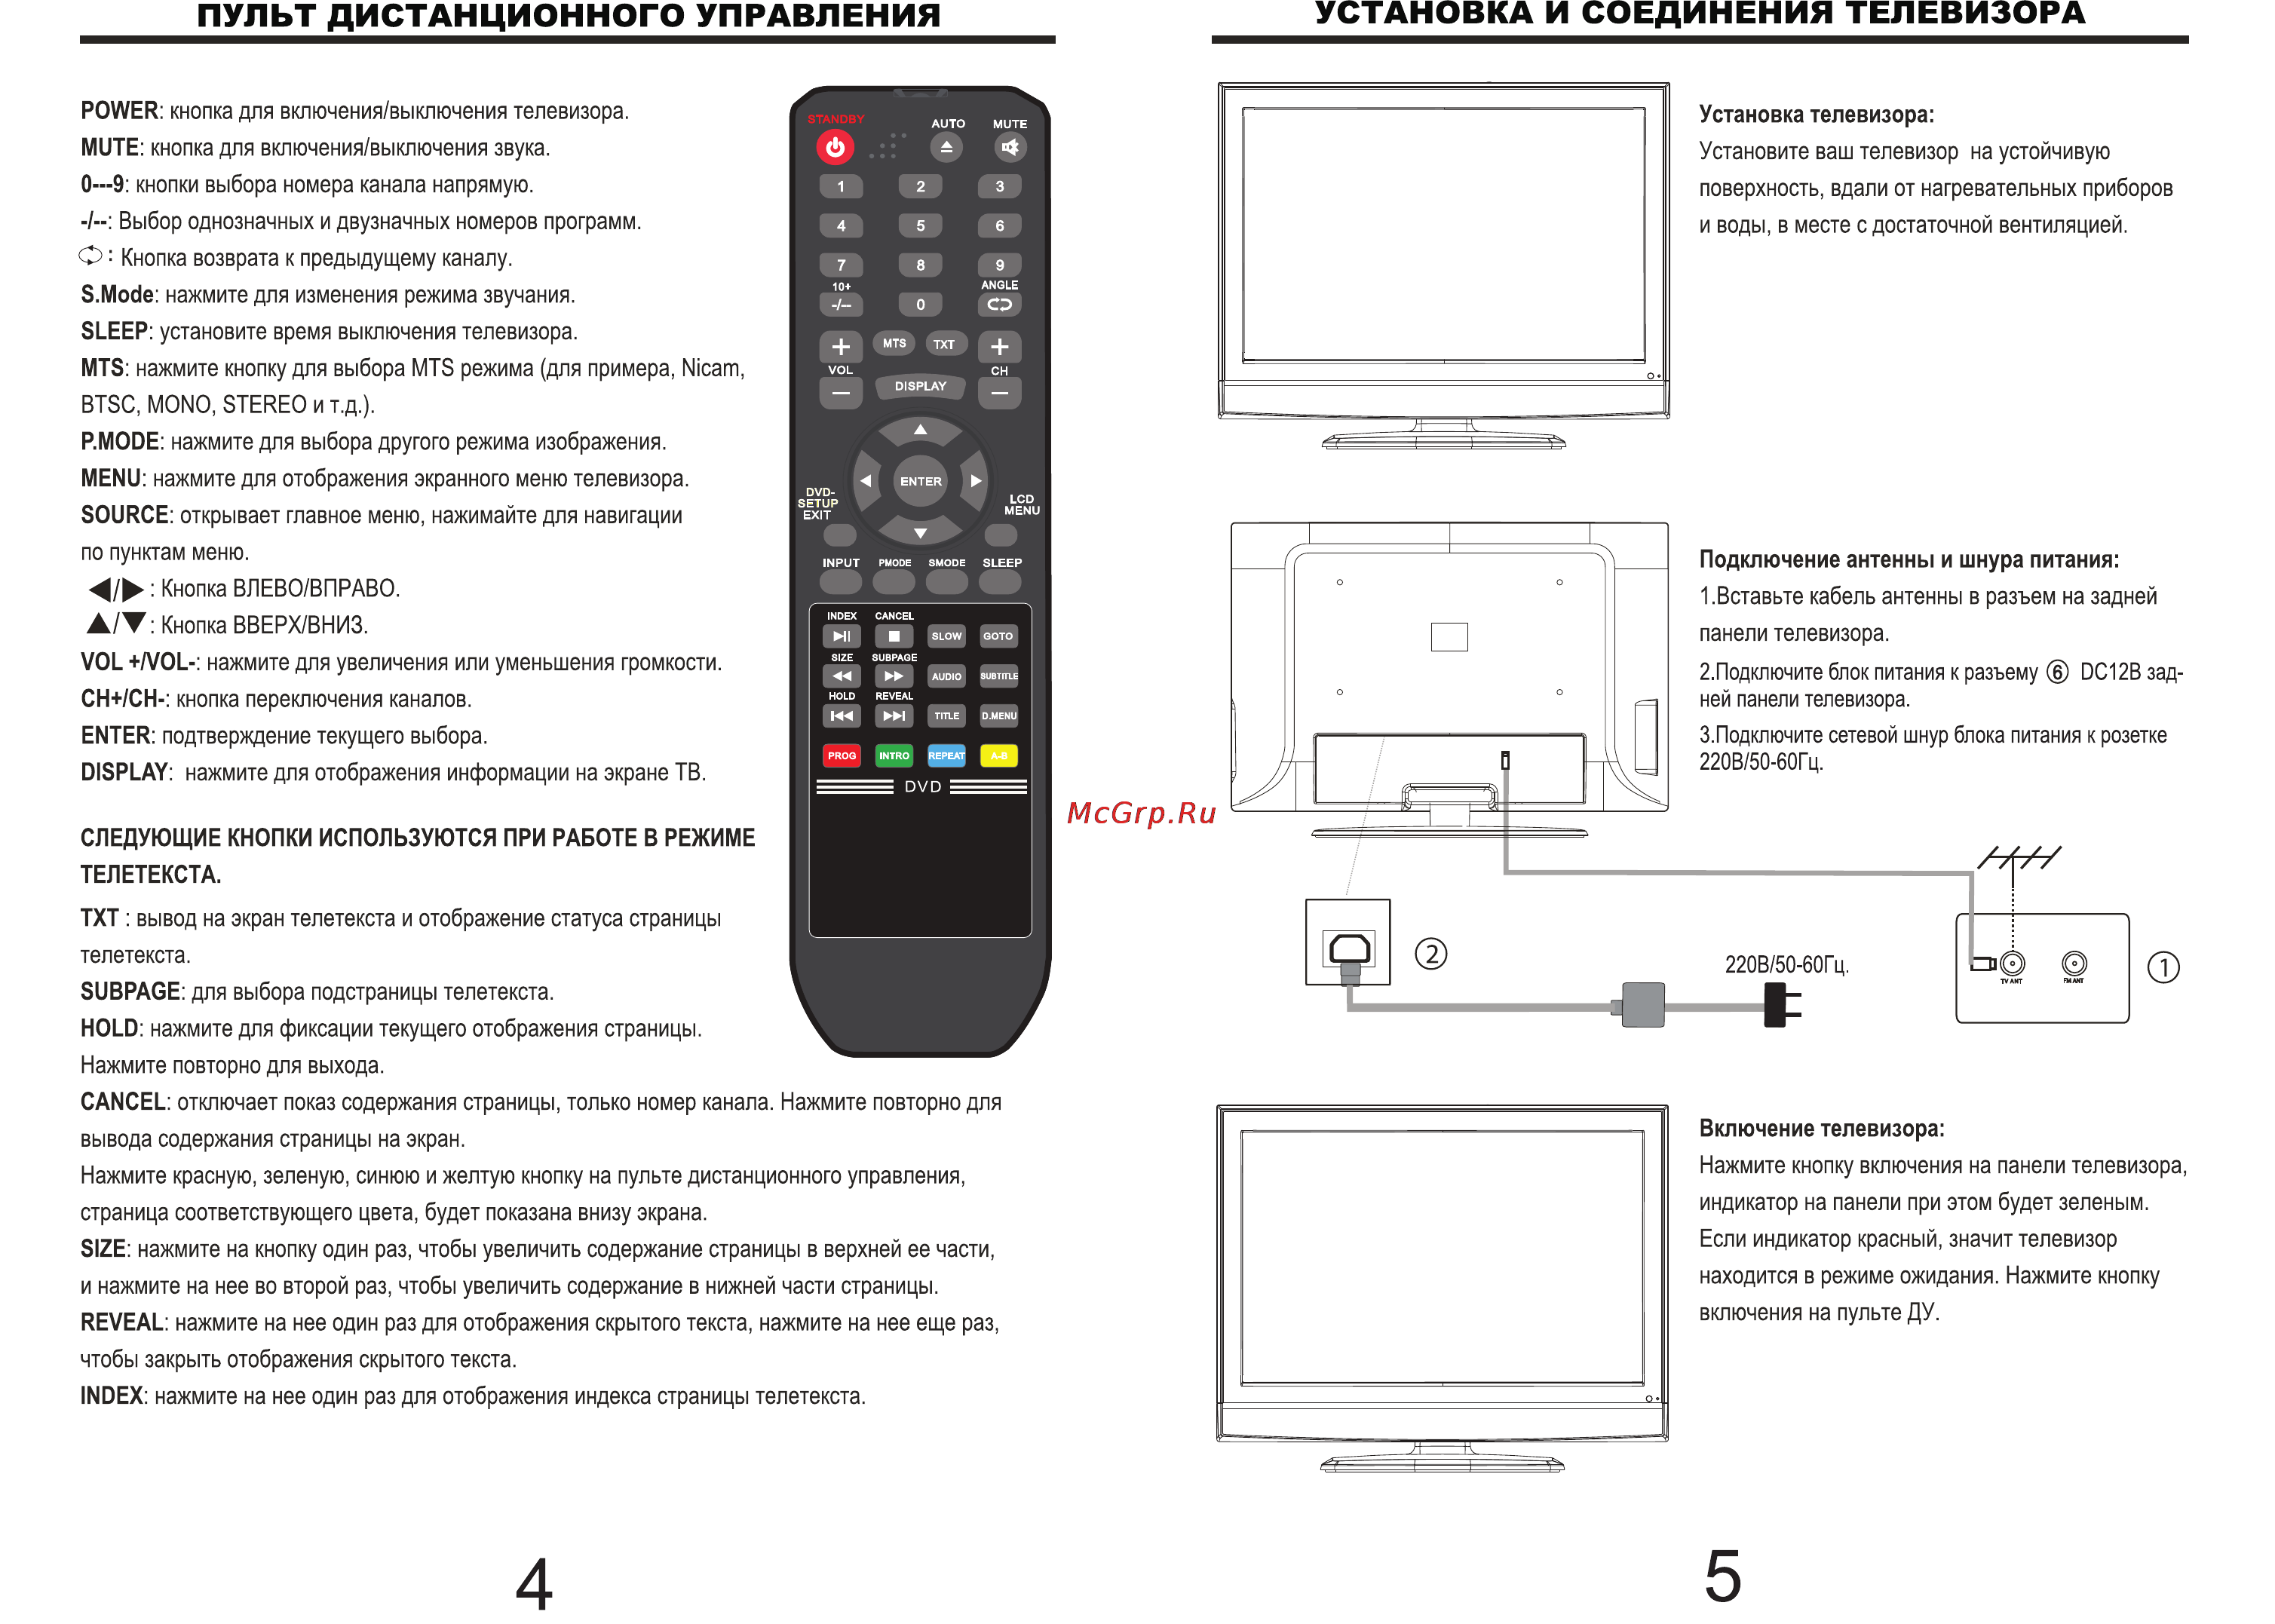 Виртуальный пульт для телевизора на телефон android и ios: скачать приложение по ссылке для телевизора самсунг, lg smart tv, panasonic tv remote и другие